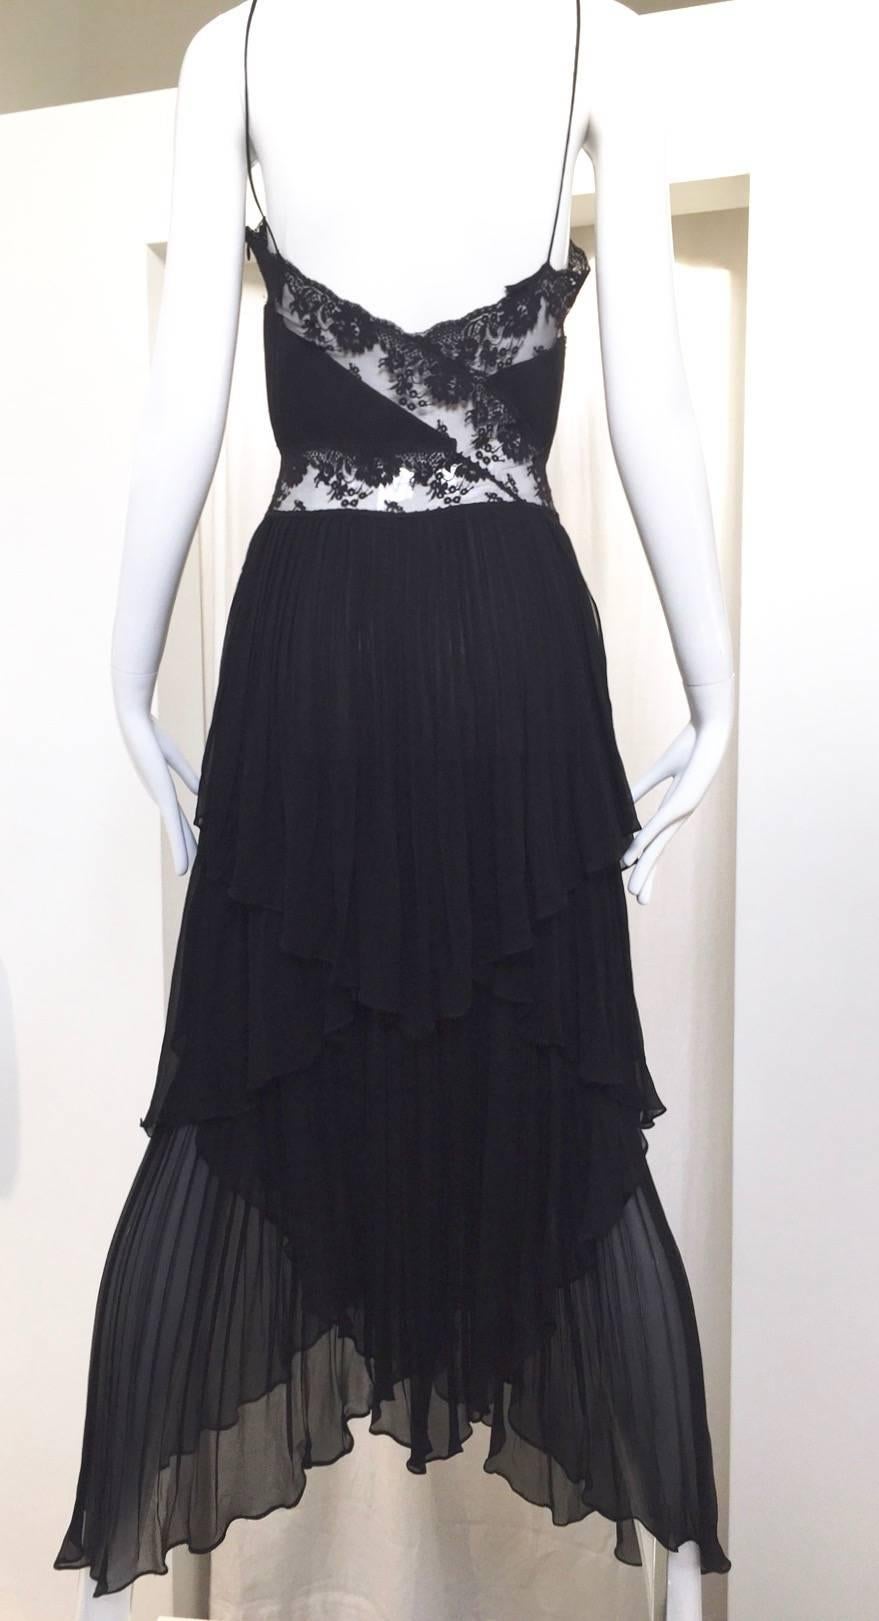 Sexy 90S ALBERTA FERRETTI black silk and lace spaghetti strap dress.
Size: 2/ XS
Size: 30